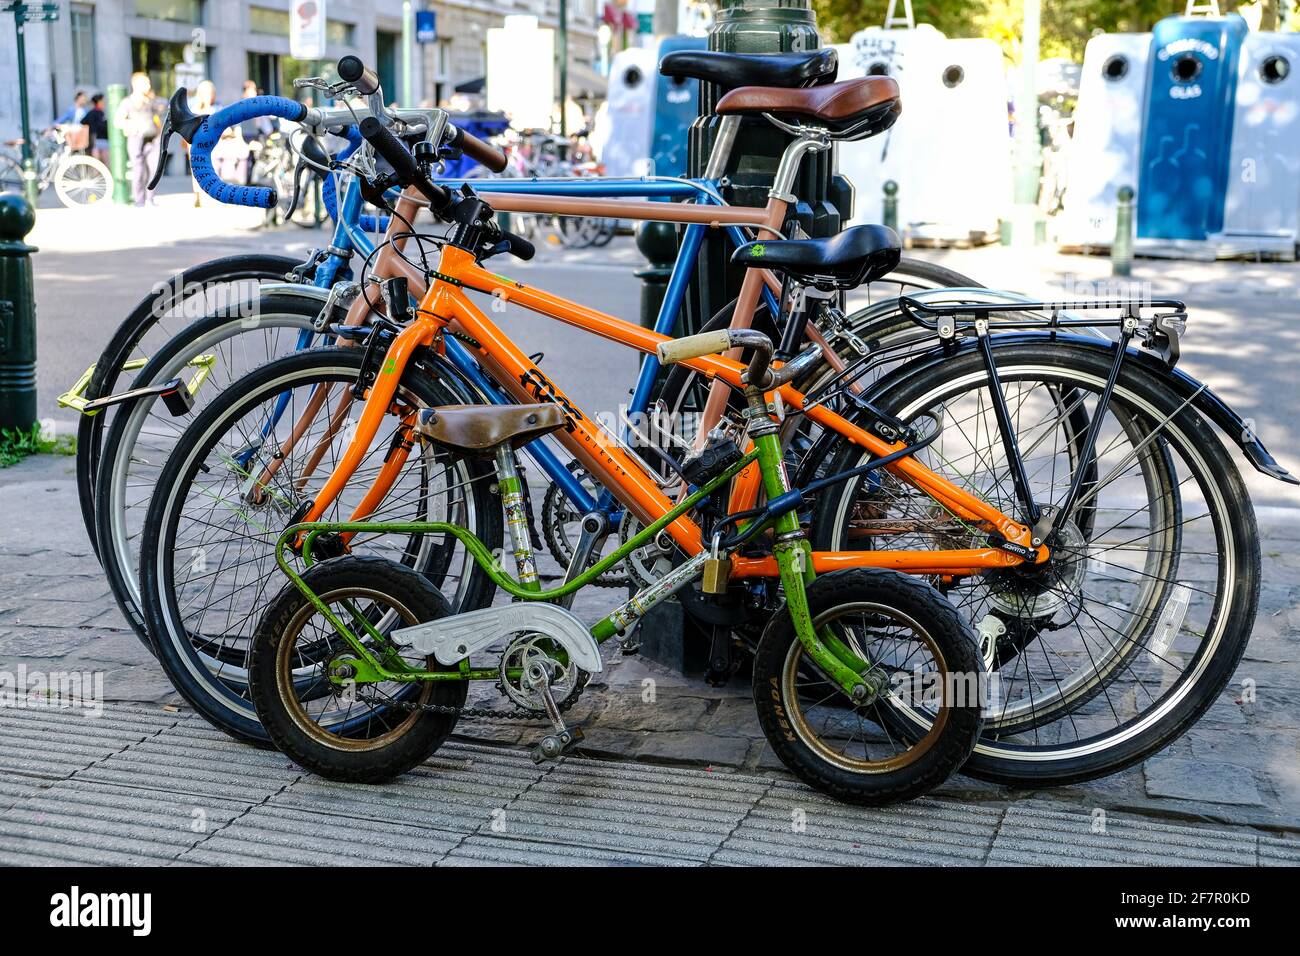 21.09.2019, Bruessel, Belgien - vier Fahrraeder einer Familie an einer Strasse in der Naehe der Kirche Sainte-Catherine in Brüssel Stock Photo